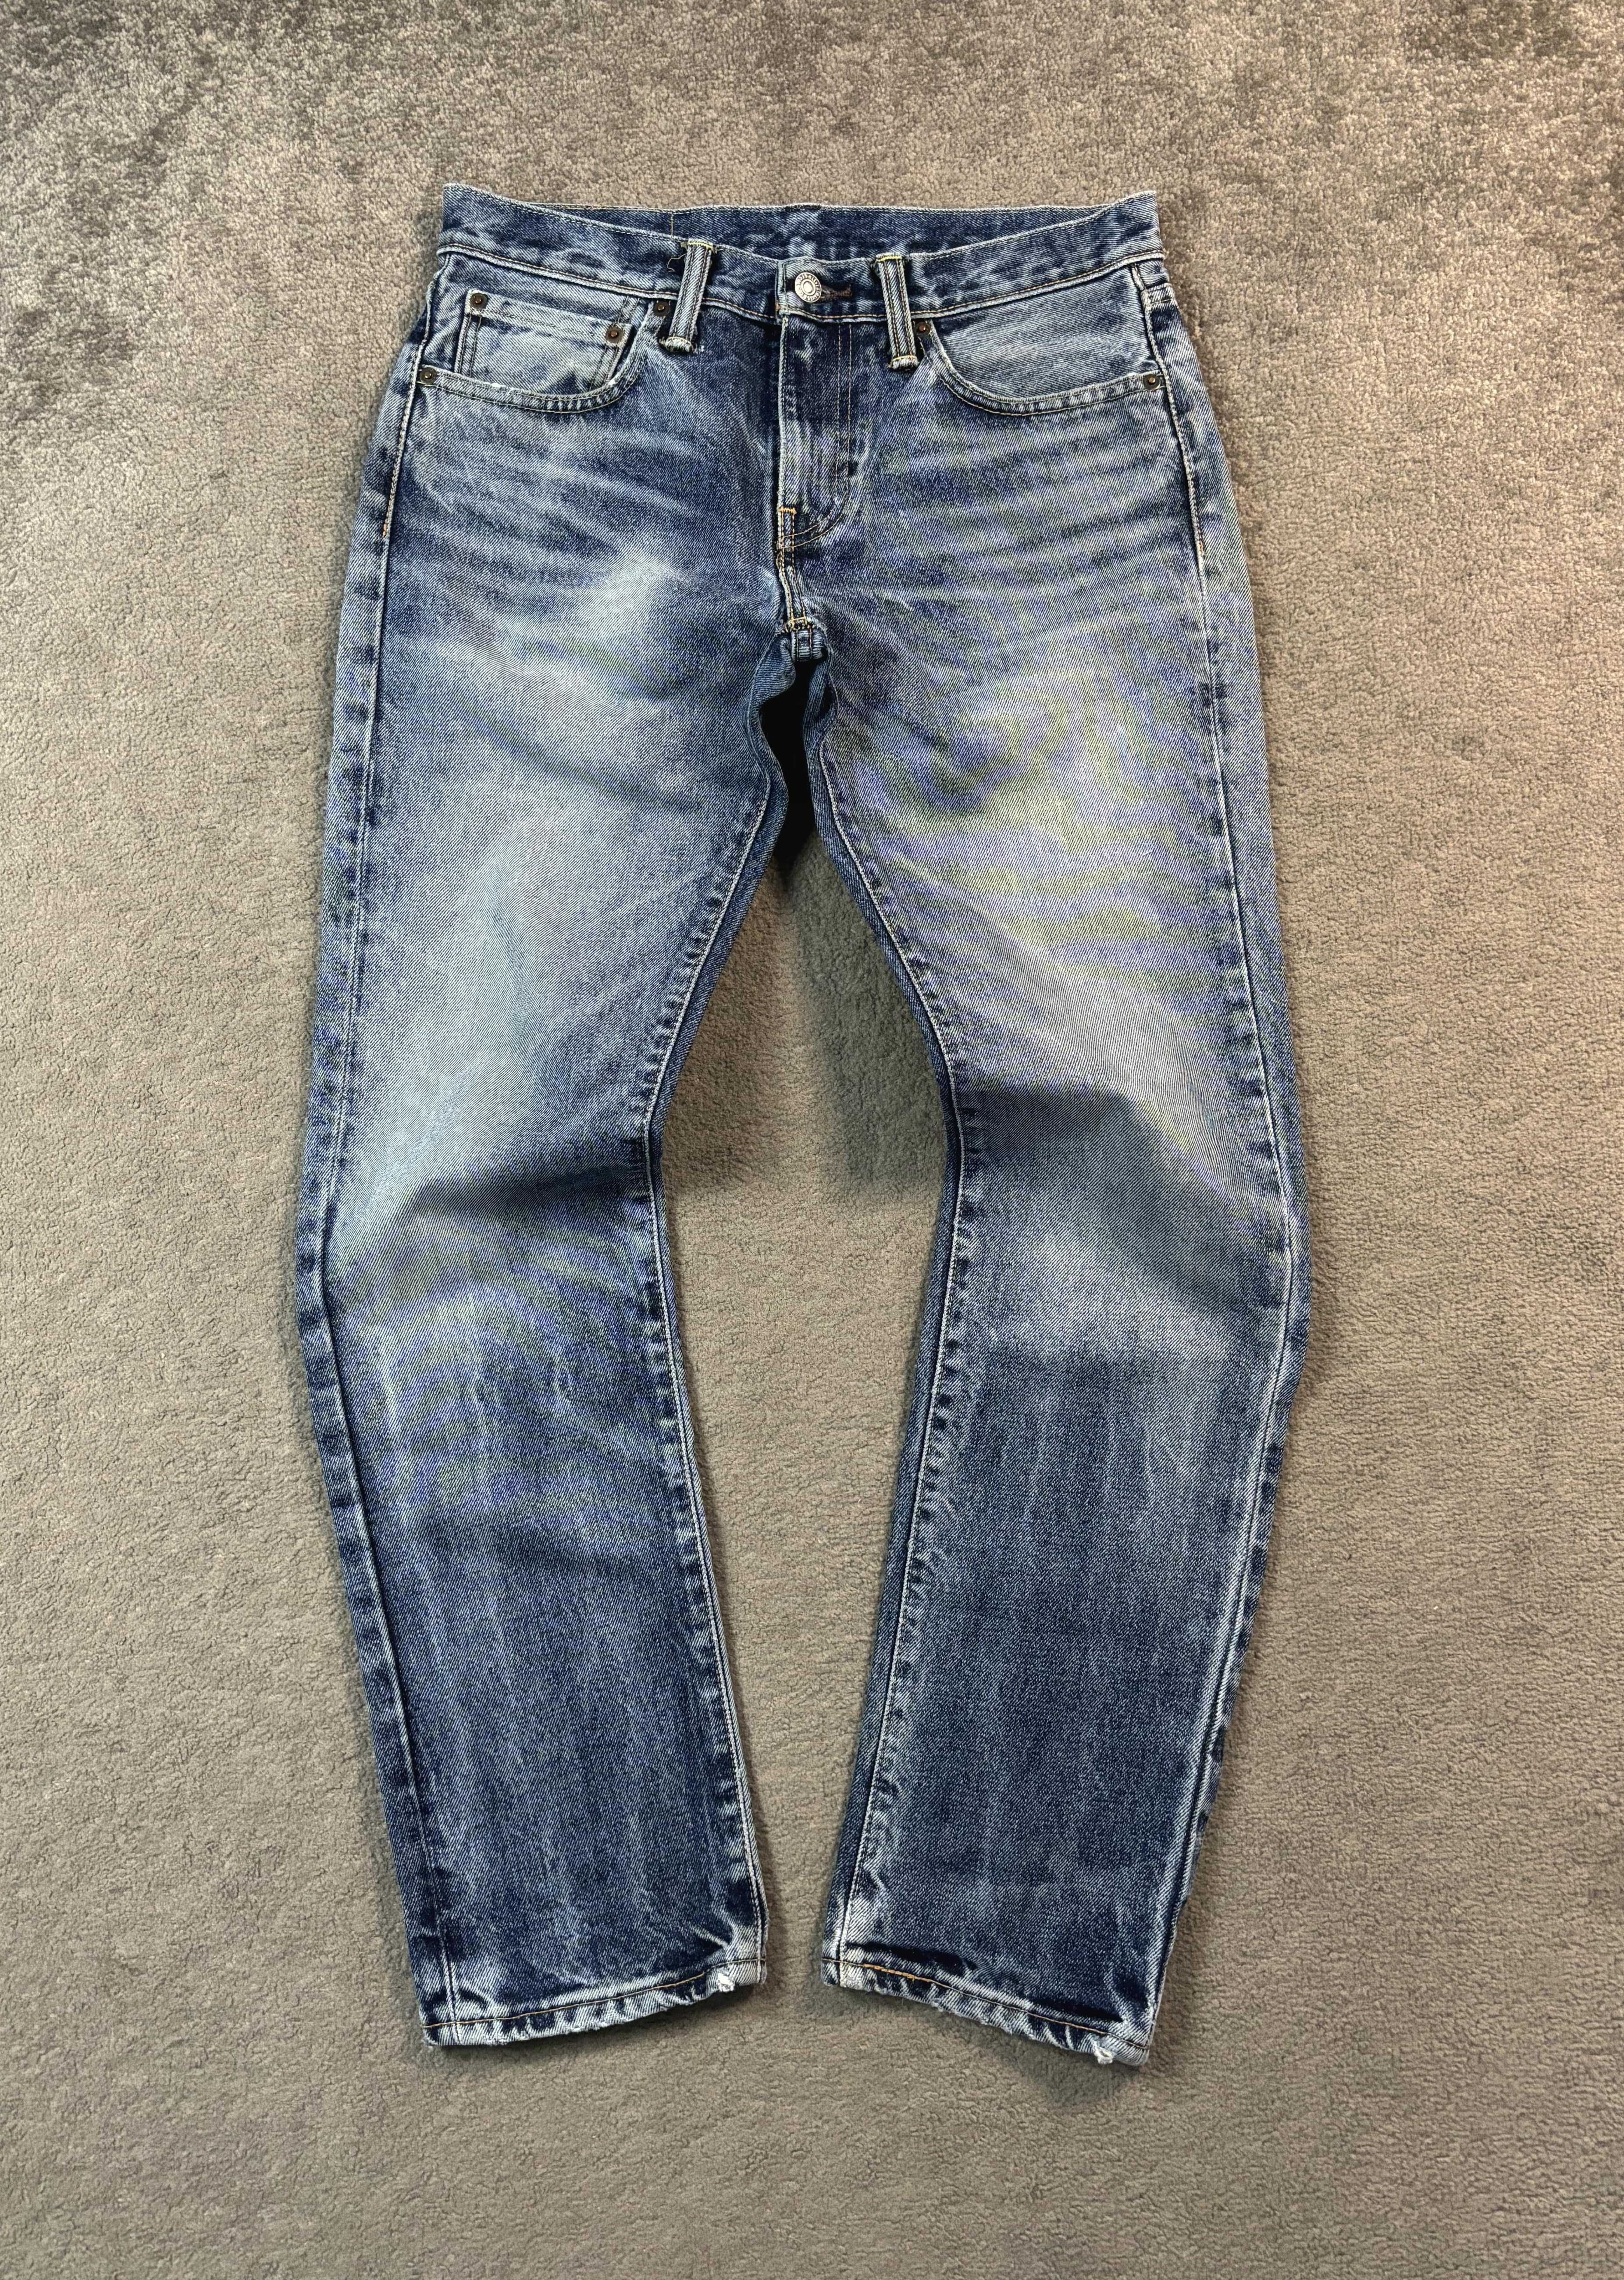 Spodnie Jeansy Levi's 31x32 Model 511 Niebieskie Streetwear